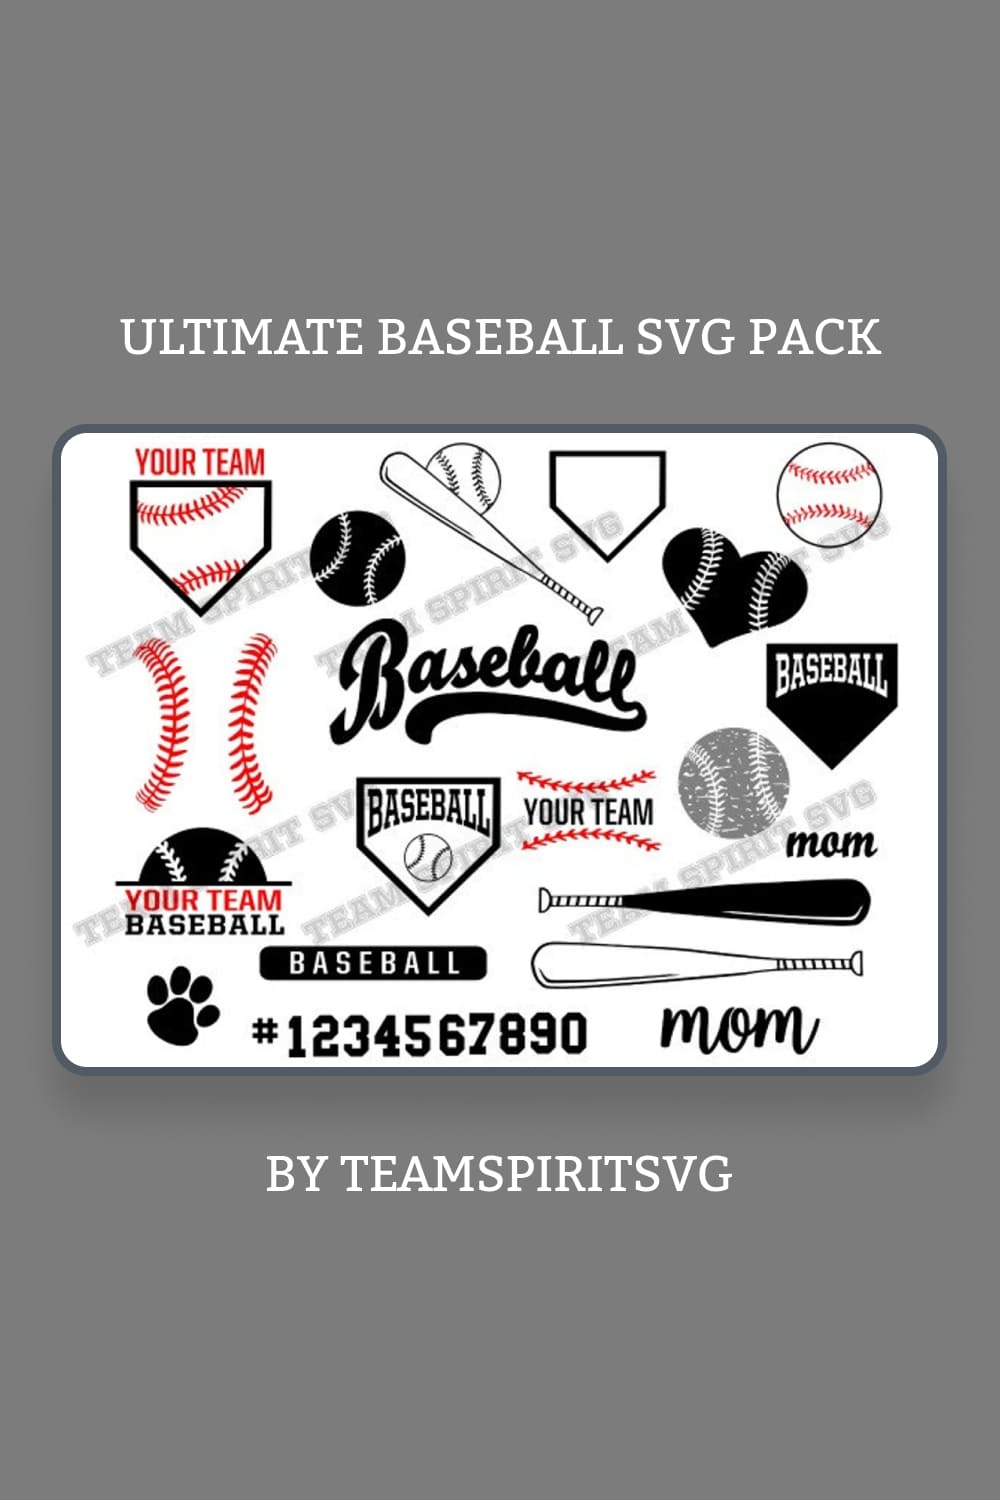 01 ultimate baseball svg pack pinterest